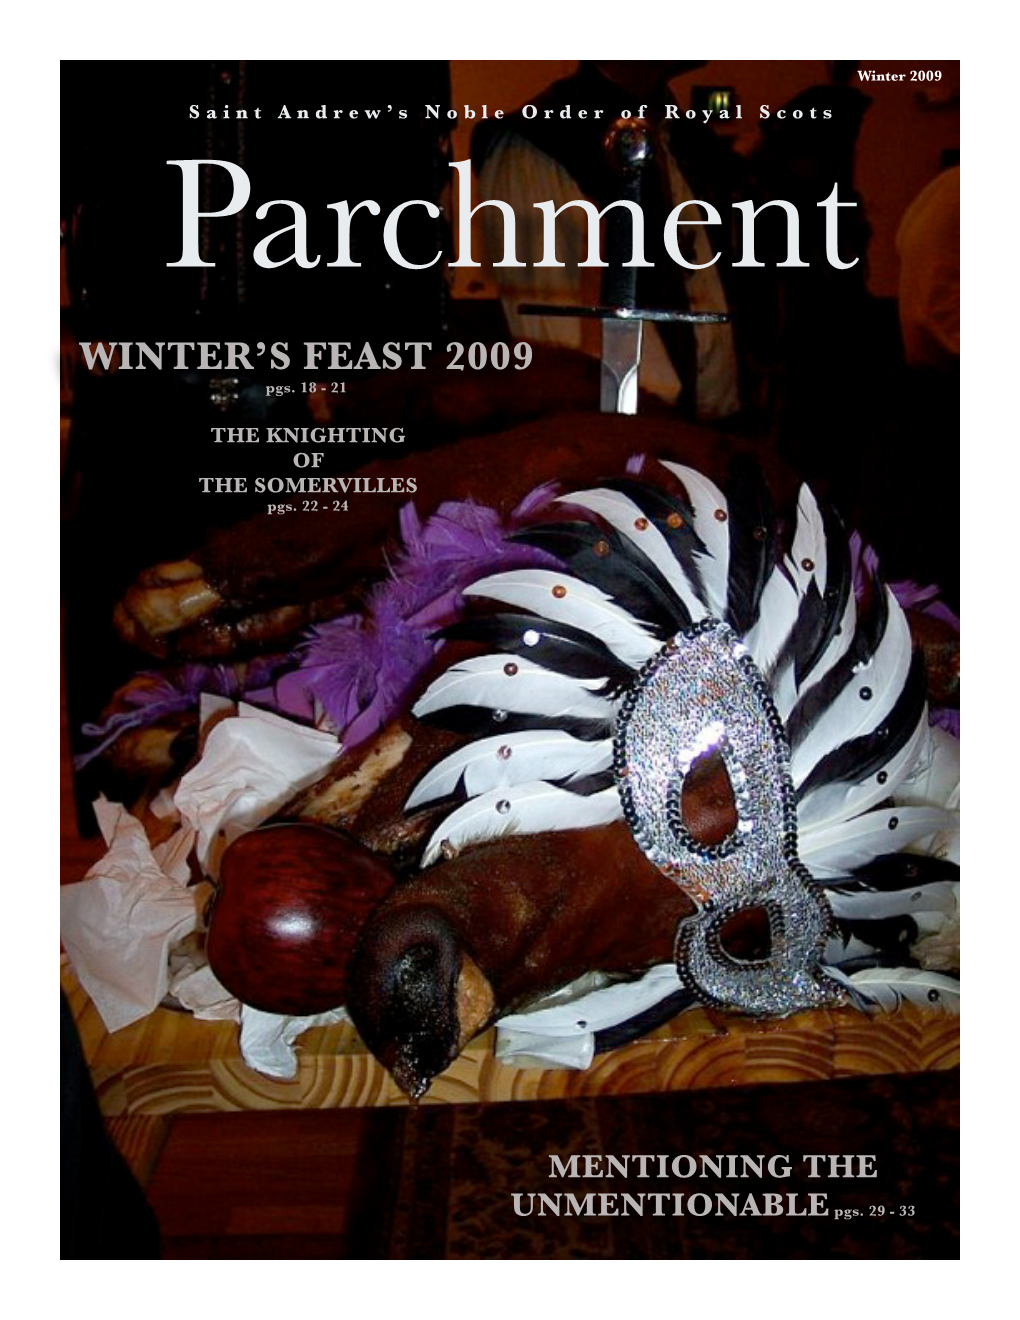 Winter's Feast 2009